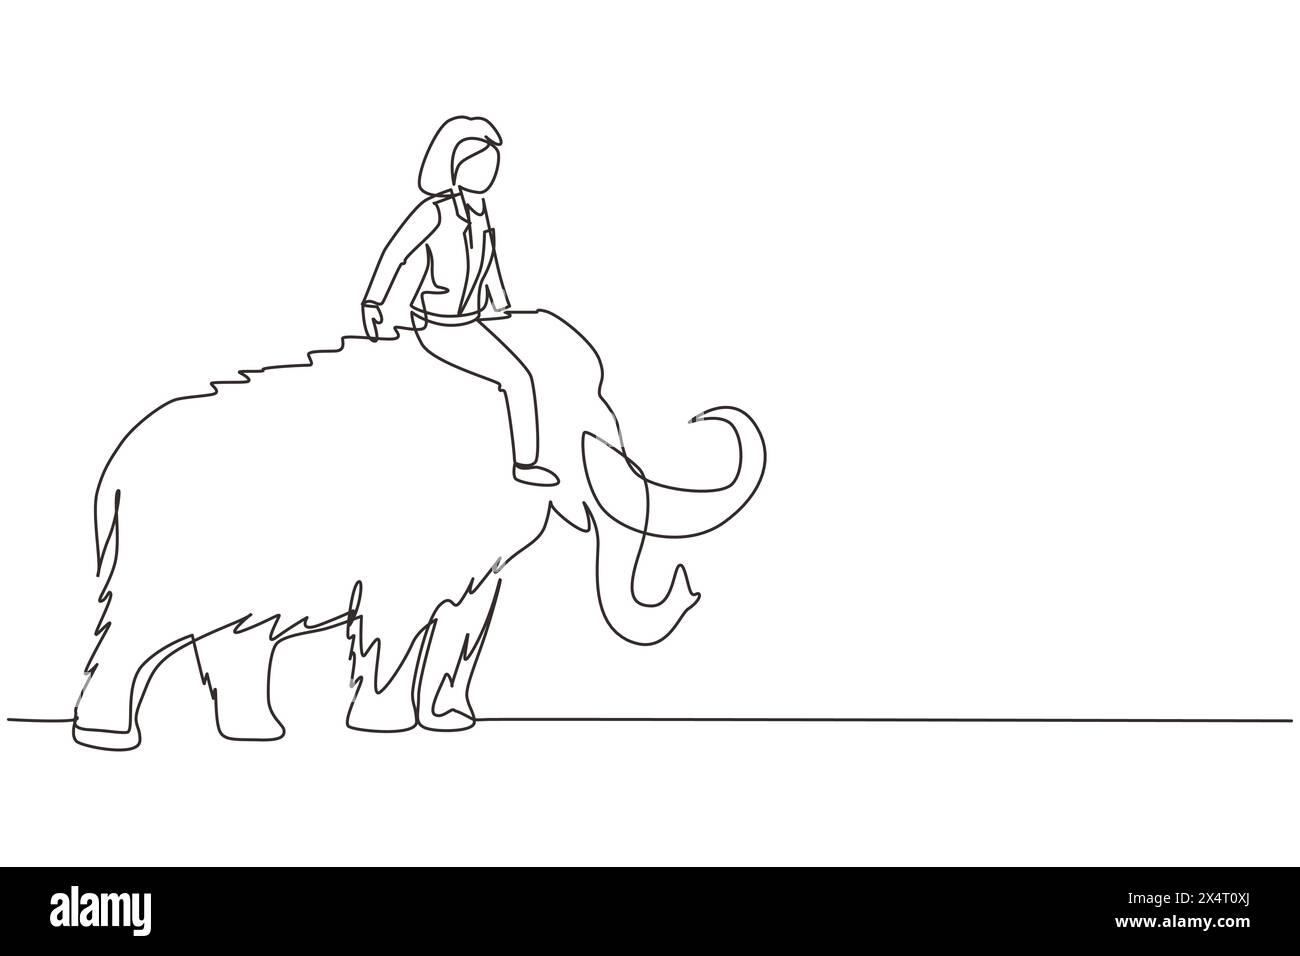 Eine durchgehende, einzeilige Geschäftsfrau, die auf einem riesigen, gefährlichen Mammut reitet. Weibliche Unternehmerin. Erfolgreiche Geschäftsfrau. Einfach Stock Vektor